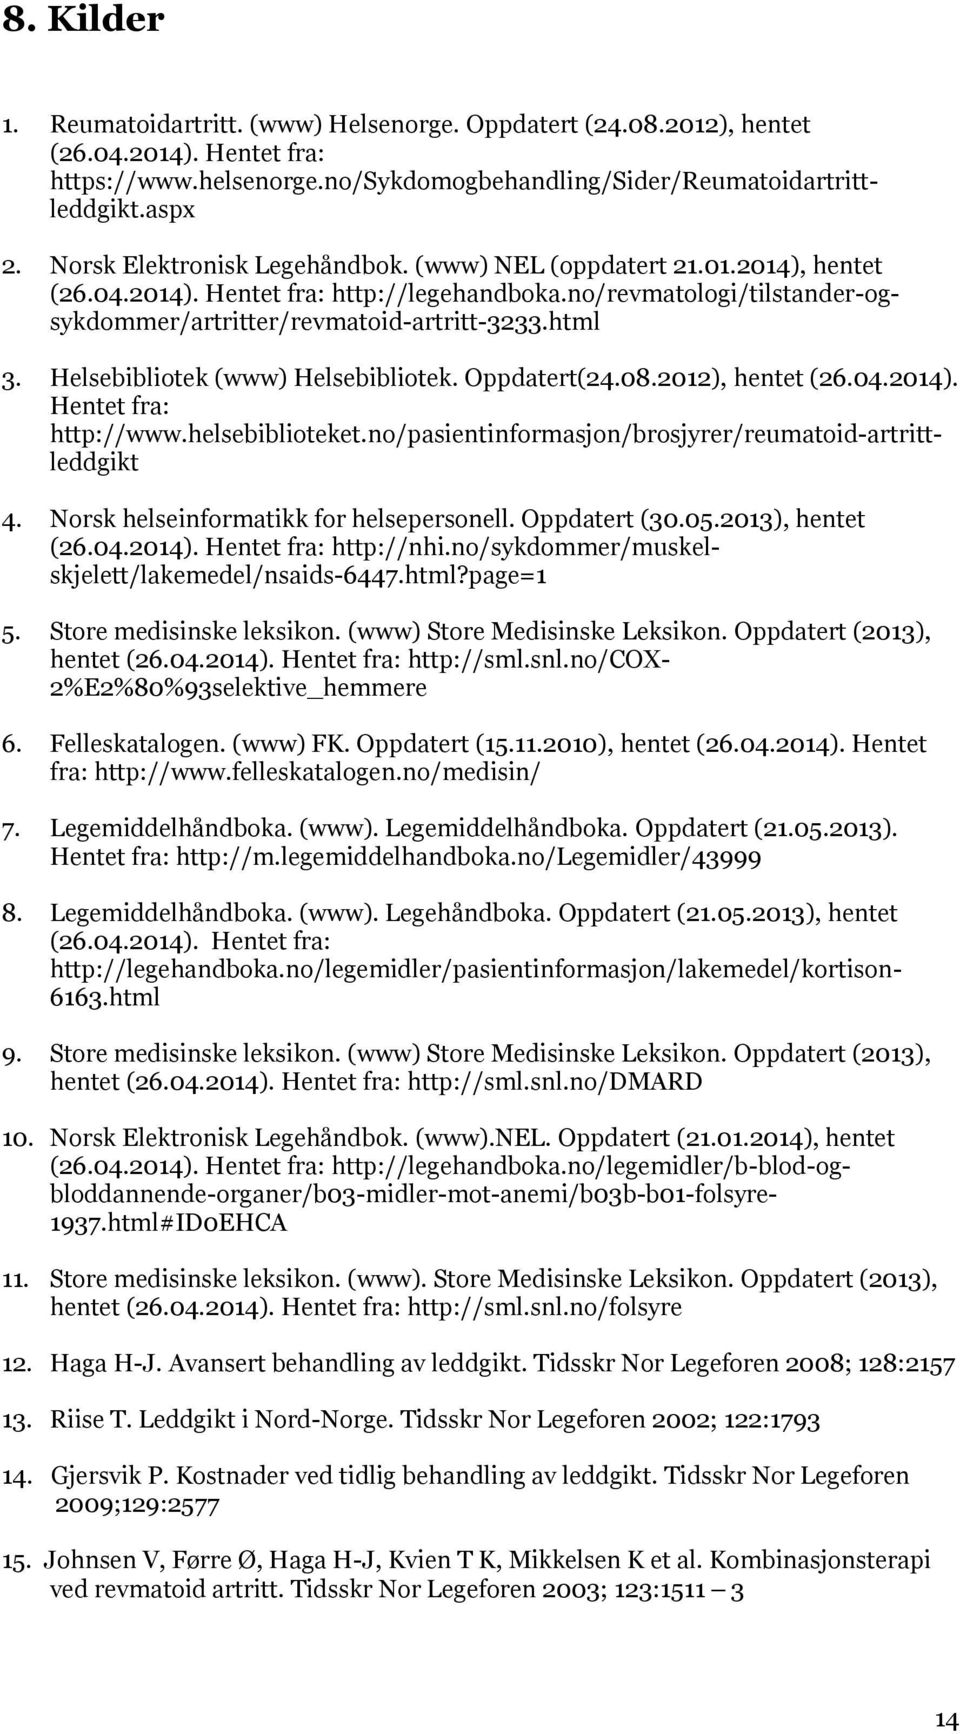 Helsebibliotek (www) Helsebibliotek. Oppdatert(24.08.2012), hentet (26.04.2014). Hentet fra: http://www.helsebiblioteket.no/pasientinformasjon/brosjyrer/reumatoid-artrittleddgikt 4.